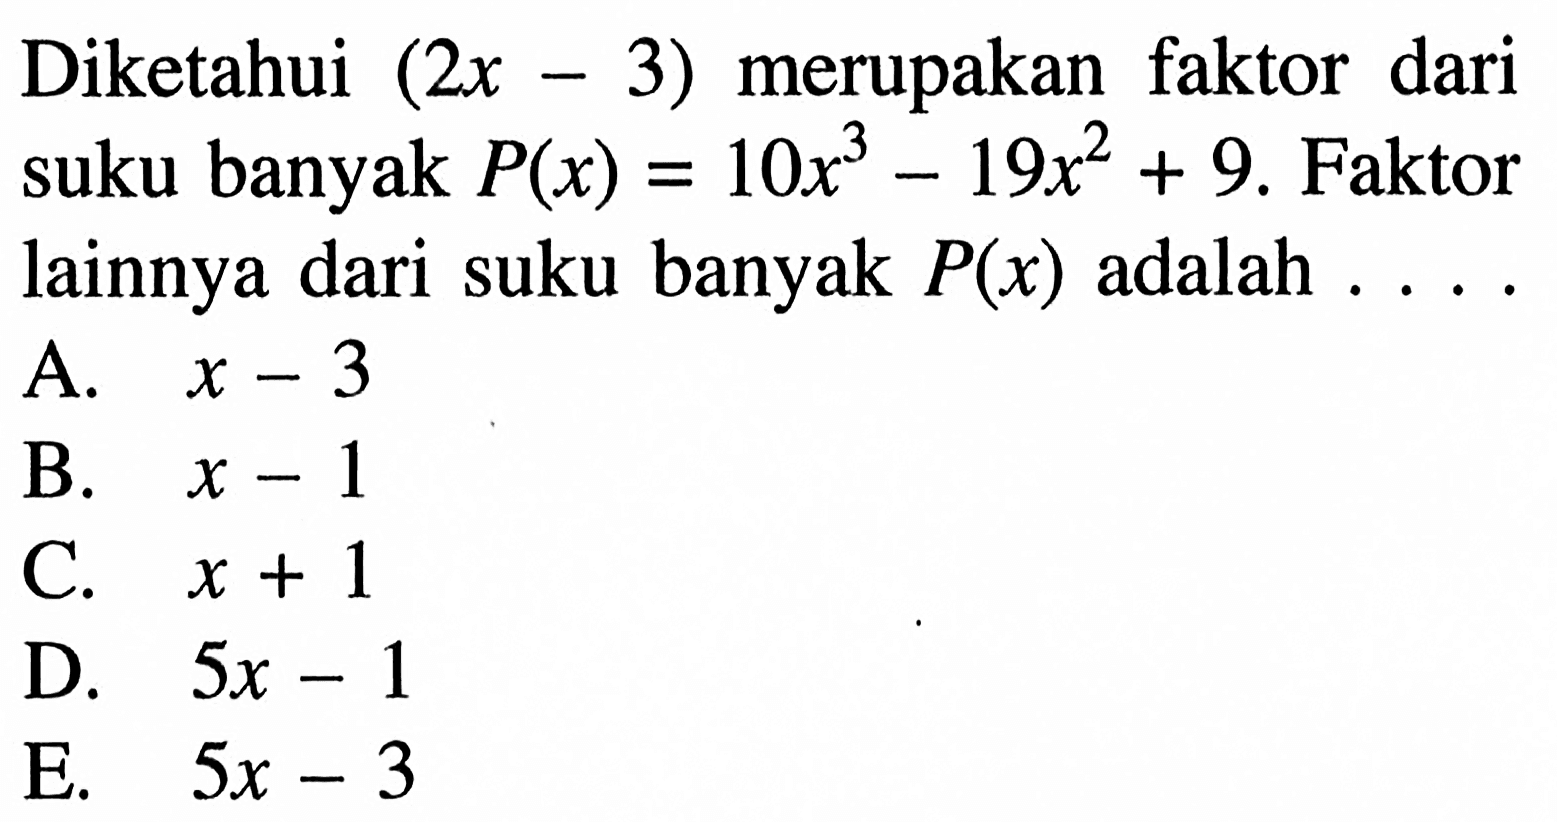 Diketahui (2x-3) merupakan faktor dari suku banyak P(x)=10x^3-19x^2+9. Faktor lainnya dari suku banyak P(x) adalah . . . .